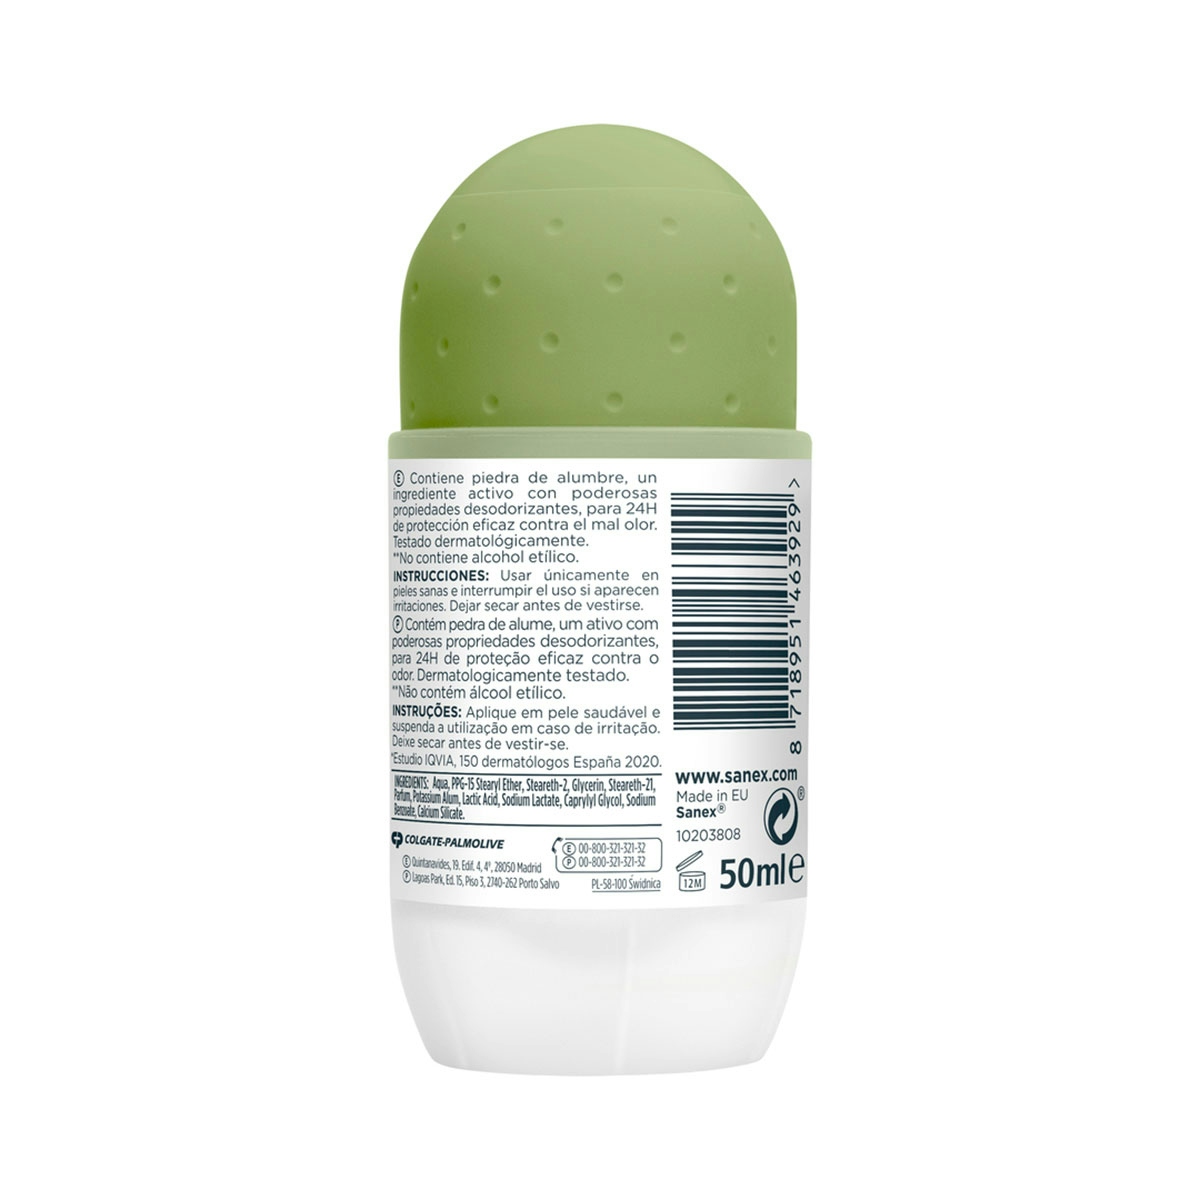 Desodorante roll-on Sanex Natur Protect piel normal 24h con piedra de alumbre 50ml